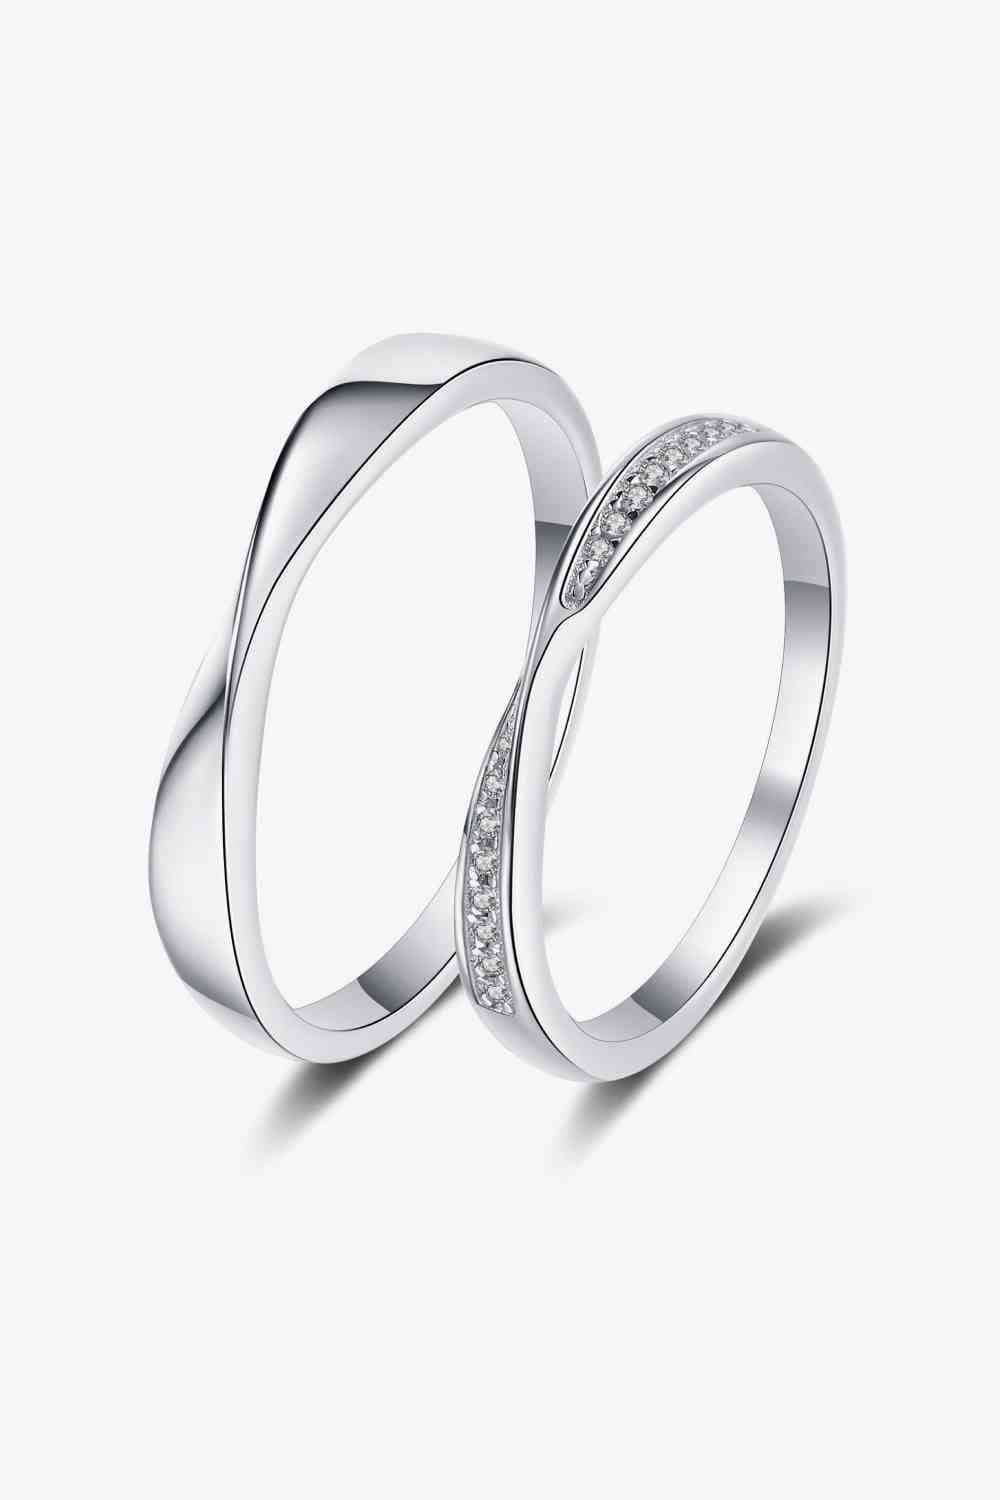 Minimalist 925 Sterling Silver Ring - Men or Women Men / 7